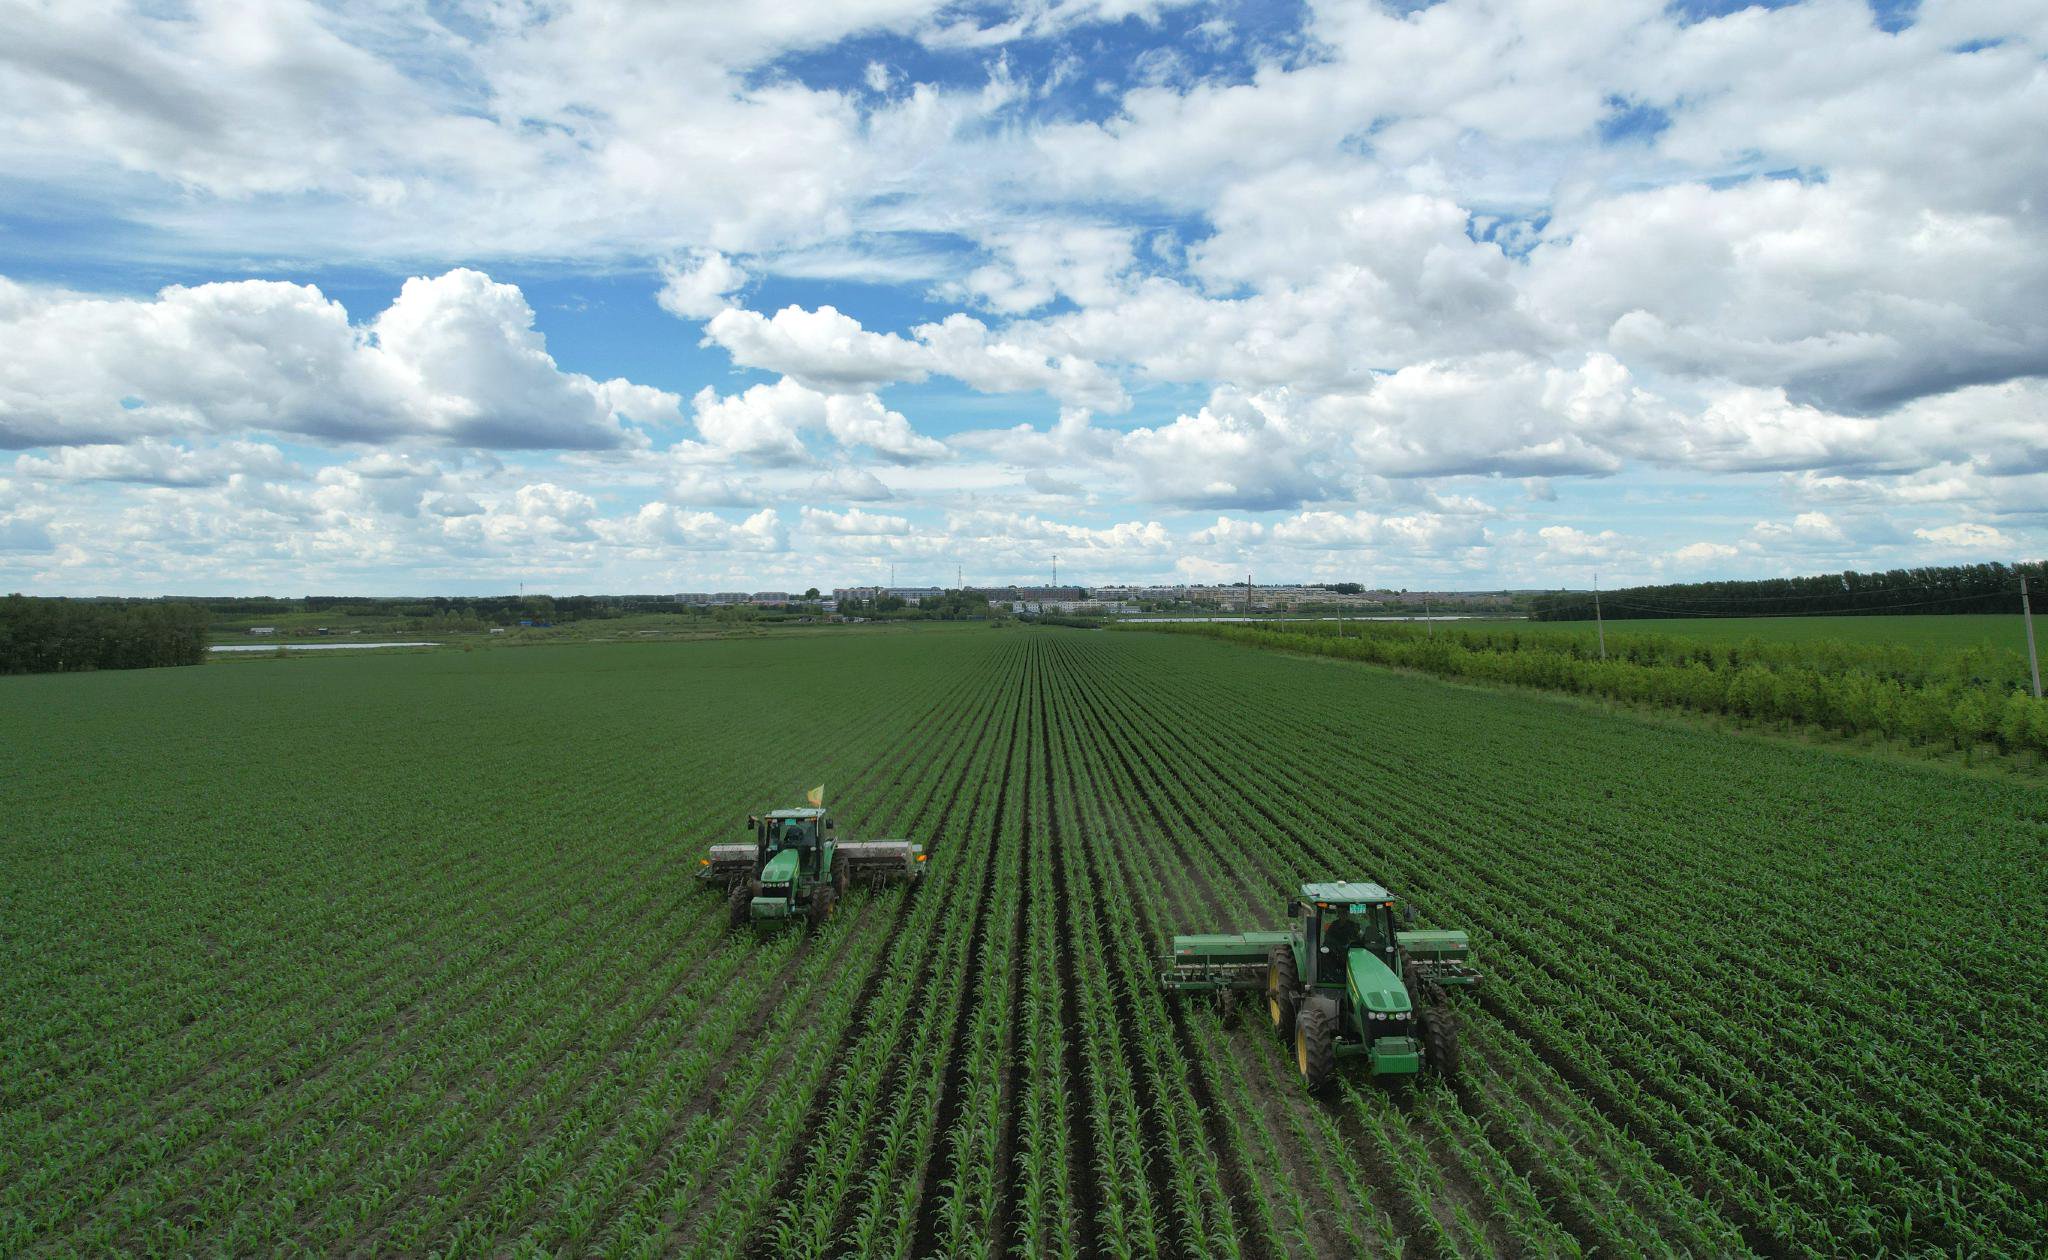 建设农场有限公司第四管理区田间农机工人正在驾驶着大马力机车对玉米进行中耕追肥作业。